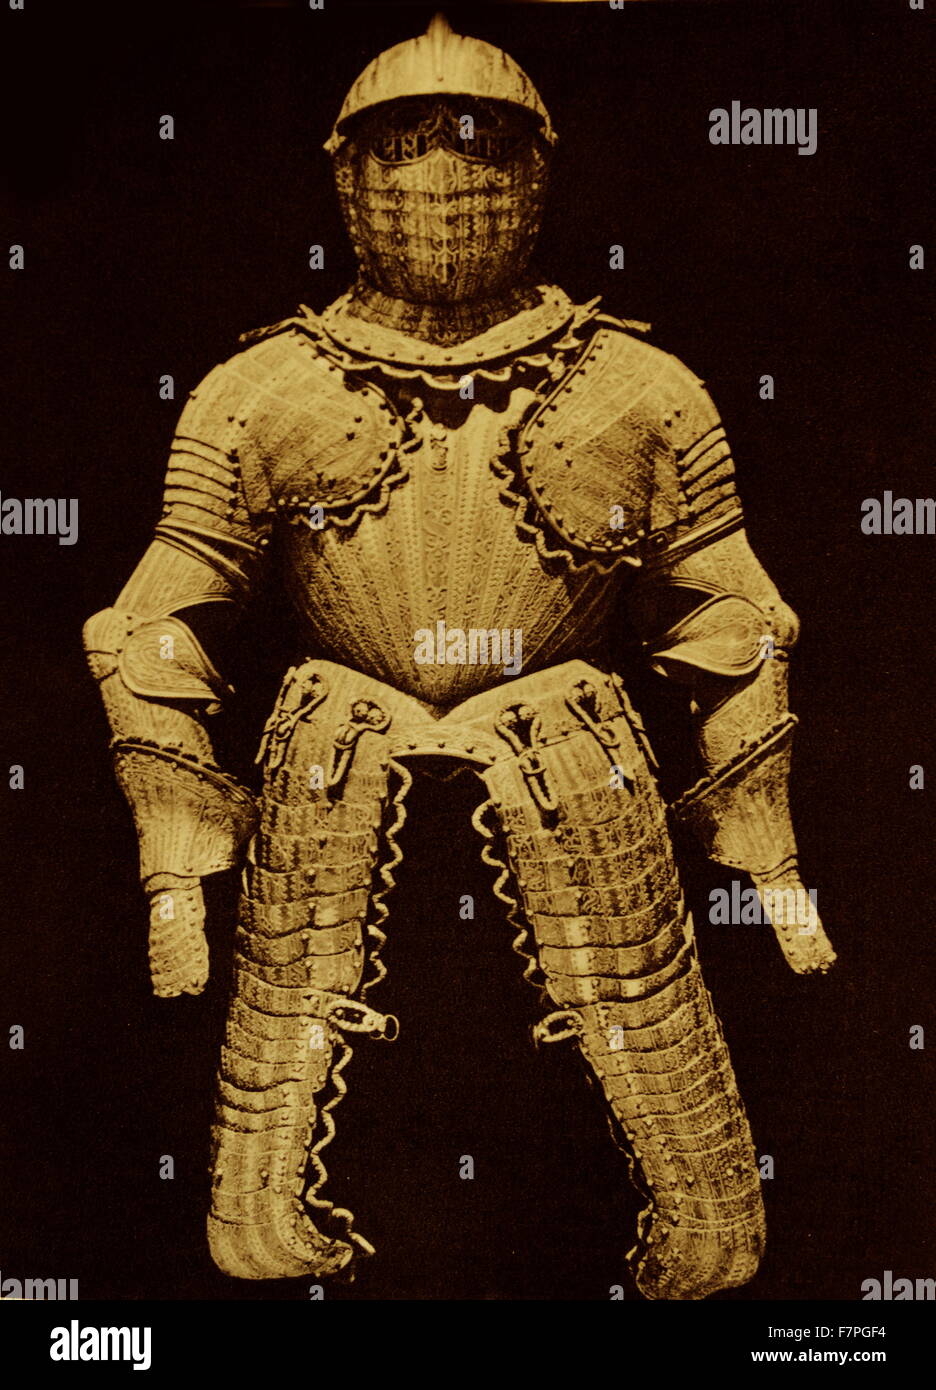 Armure du roi Philippe II d'Espagne vers 1575. elle est préservée dans l'Armurerie Royale de Madrid, elle a été faite en Navarre au xvie siècle Banque D'Images